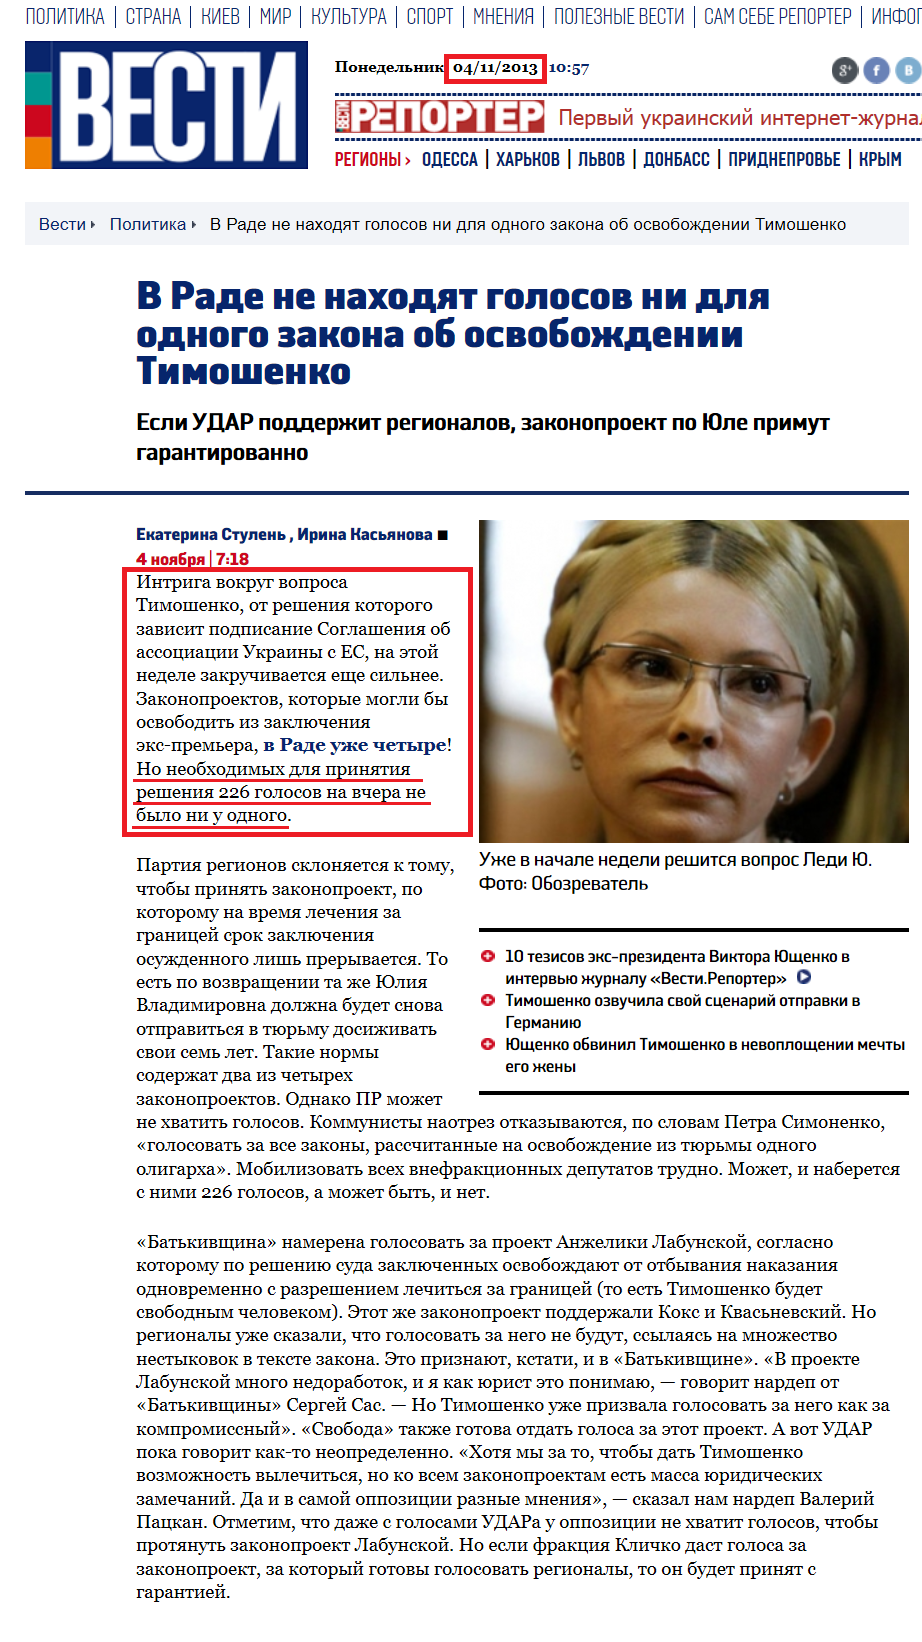 http://vesti.ua/politika/23538-v-rade-ne-nahodjat-golosov-ni-dlja-odnogo-zakona-ob-osvobozhdenii-timoshenko